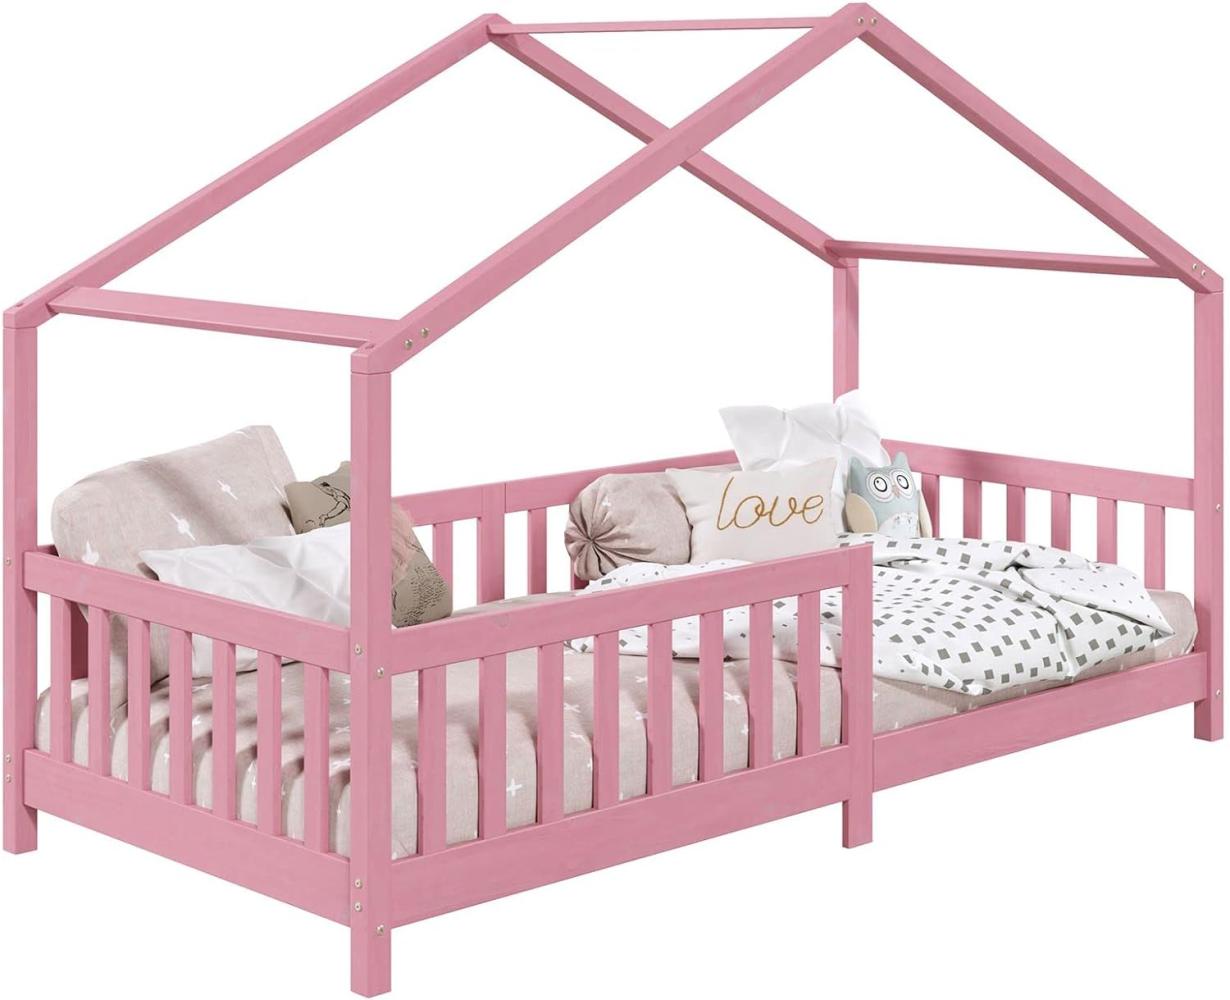 IDIMEX Hausbett LISAN aus massiver Kiefer in rosa, schönes Montessori Bett in 90 x 200 cm, stabiles Indianerbett mit Rausfallschutz und Dach Bild 1